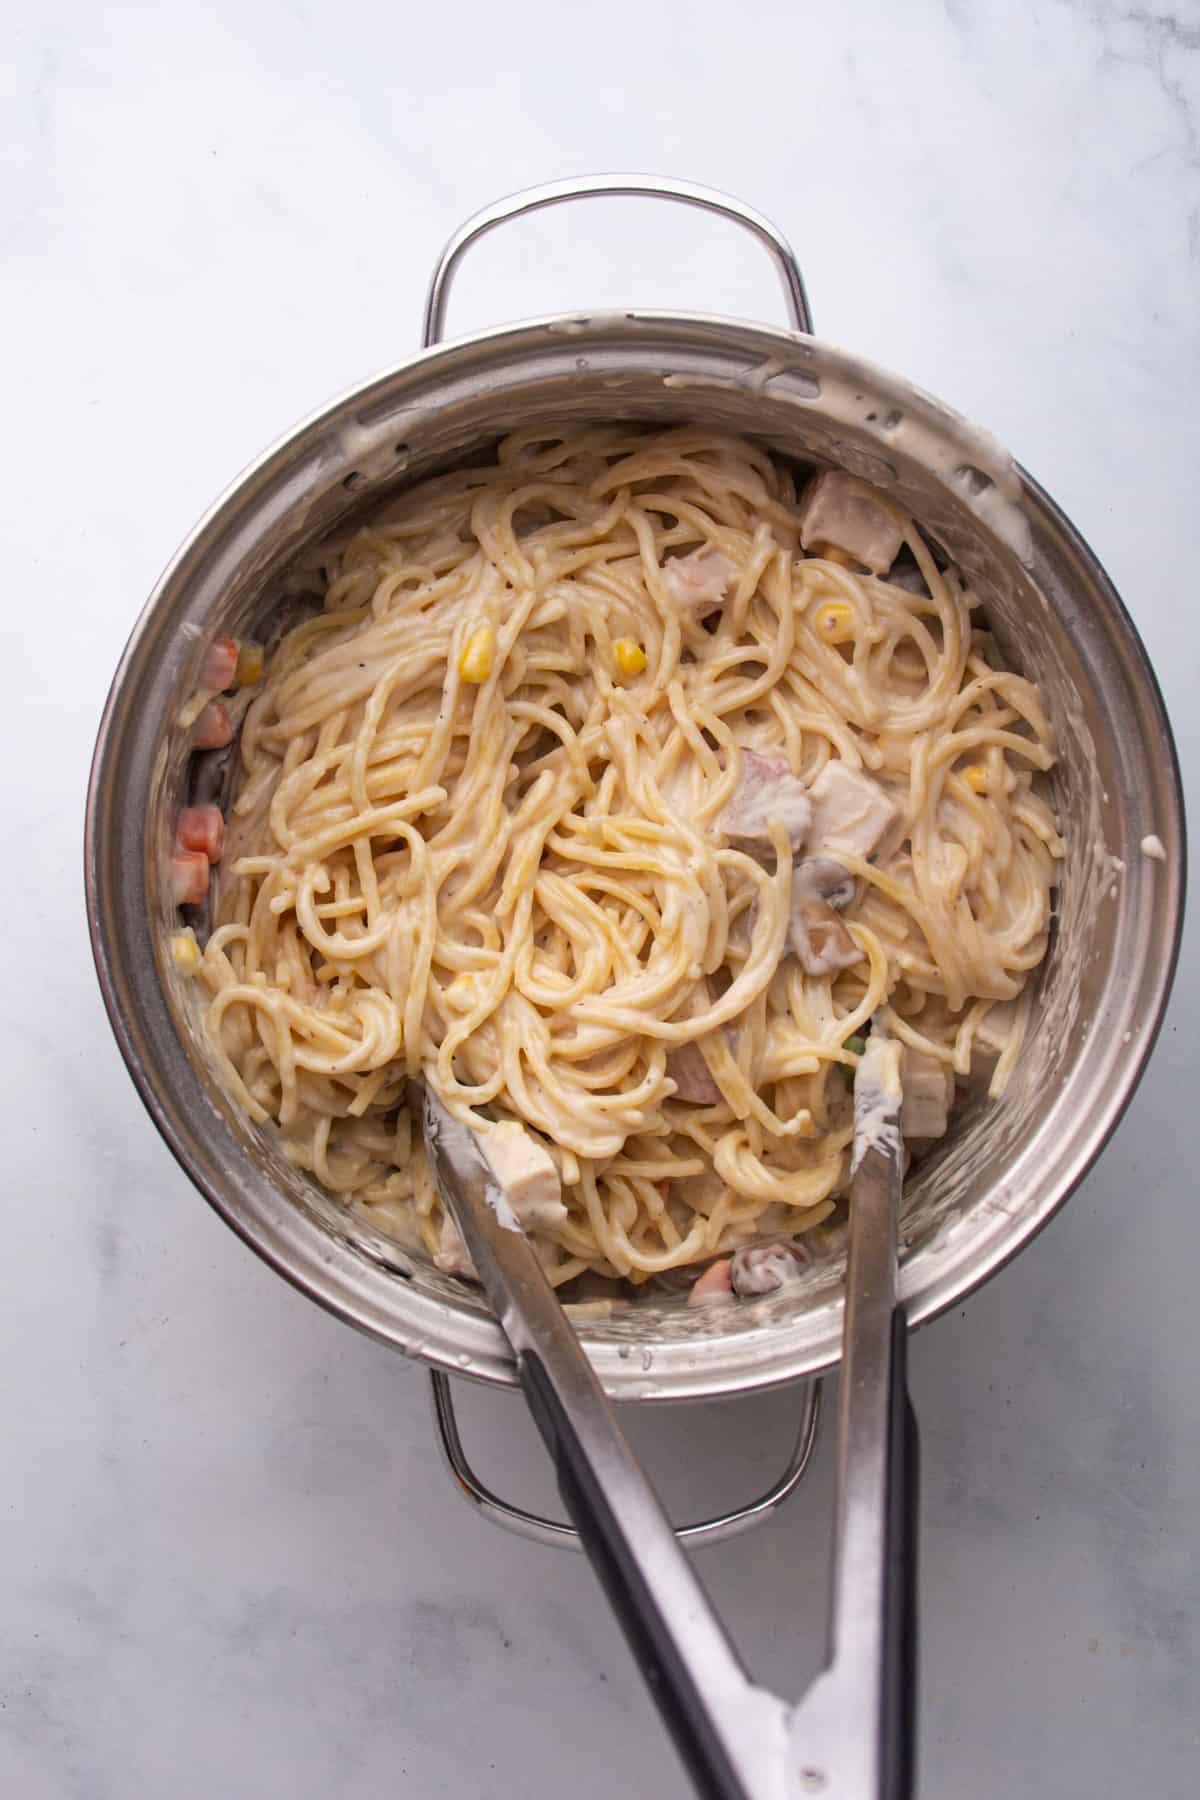 pasta mixed with Turkey Tetrazzini Recipe sauce